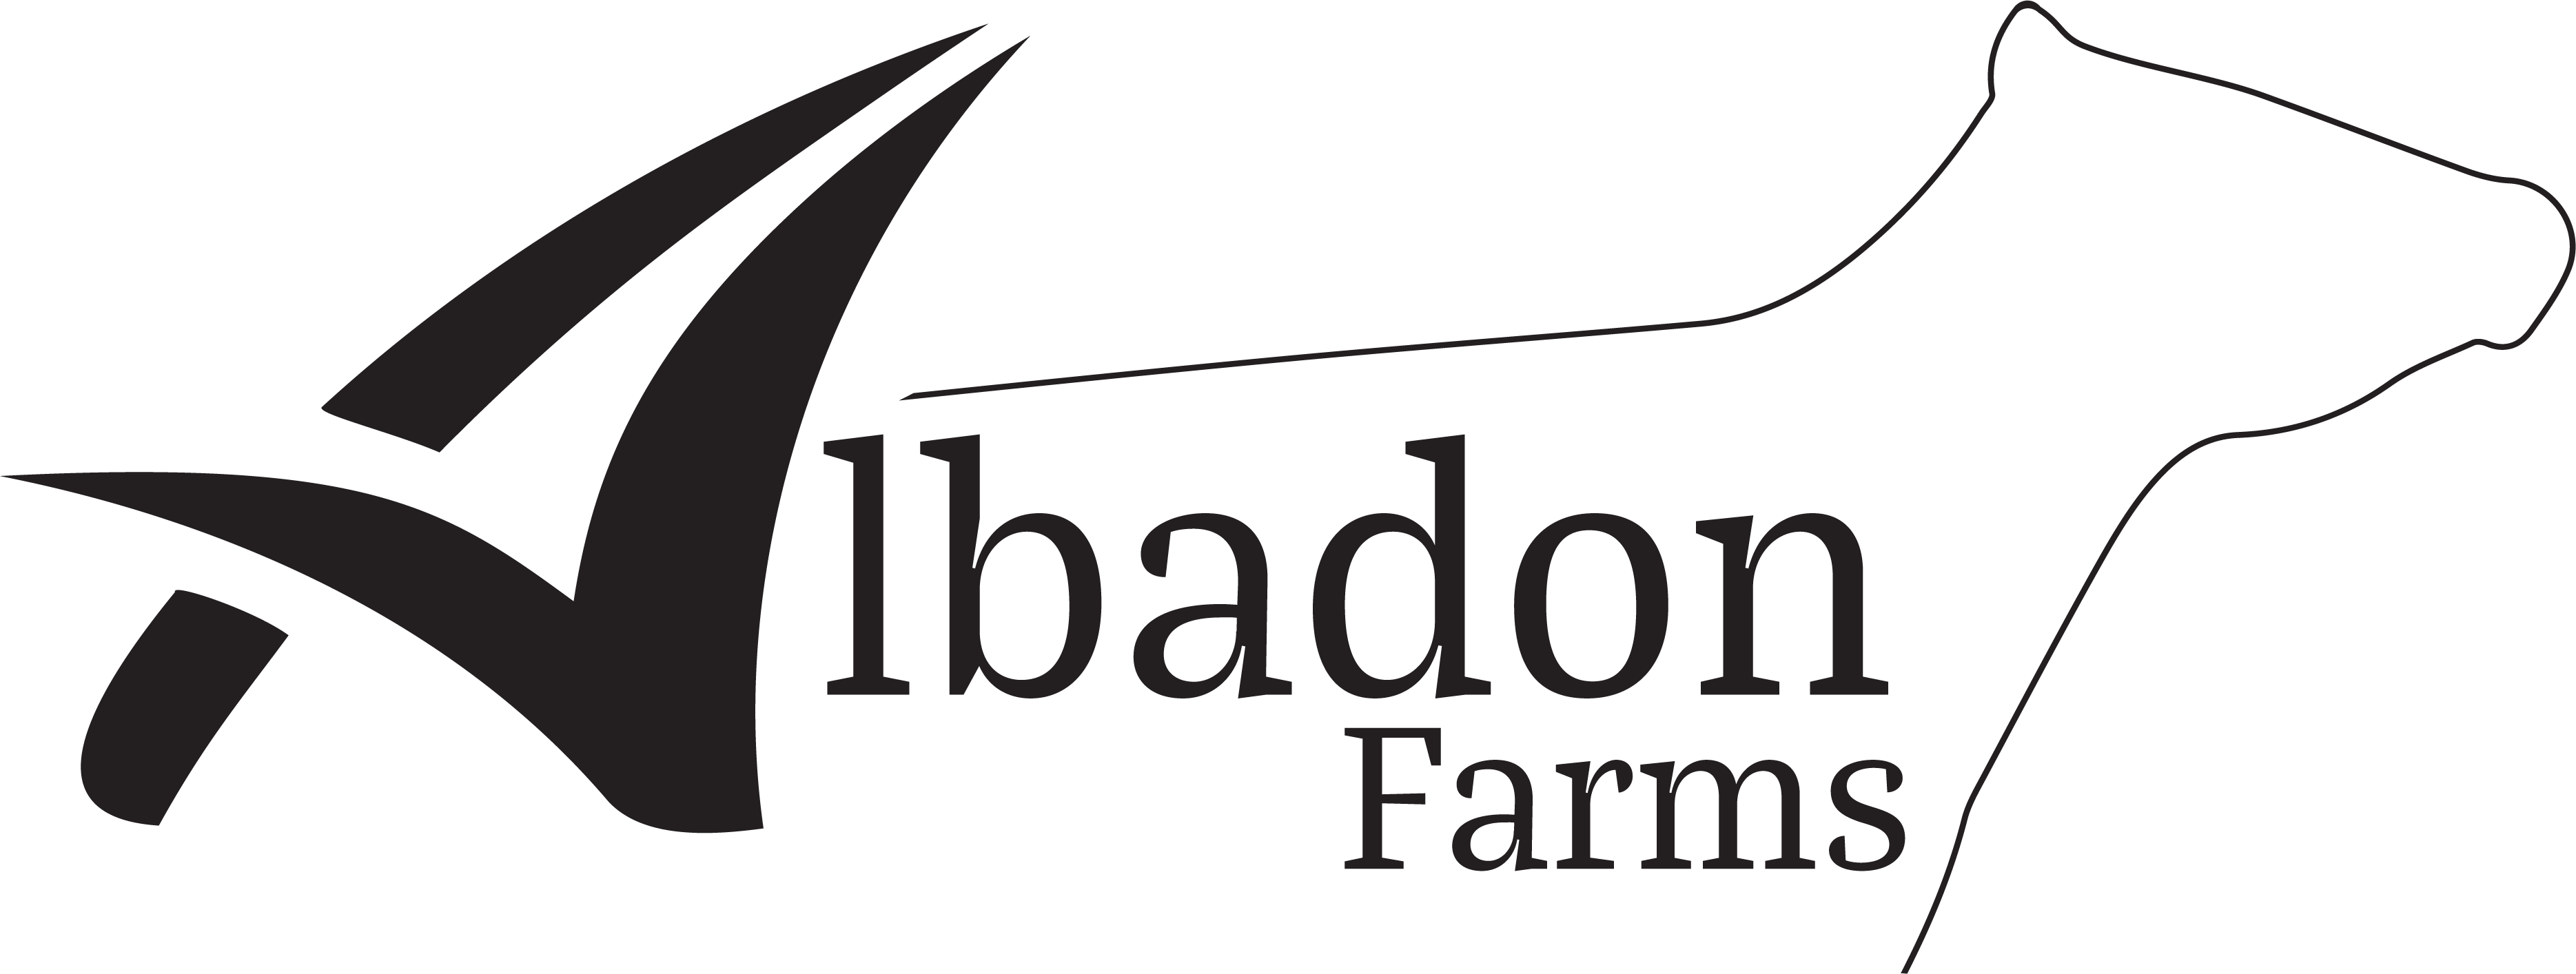 Albadon Farms